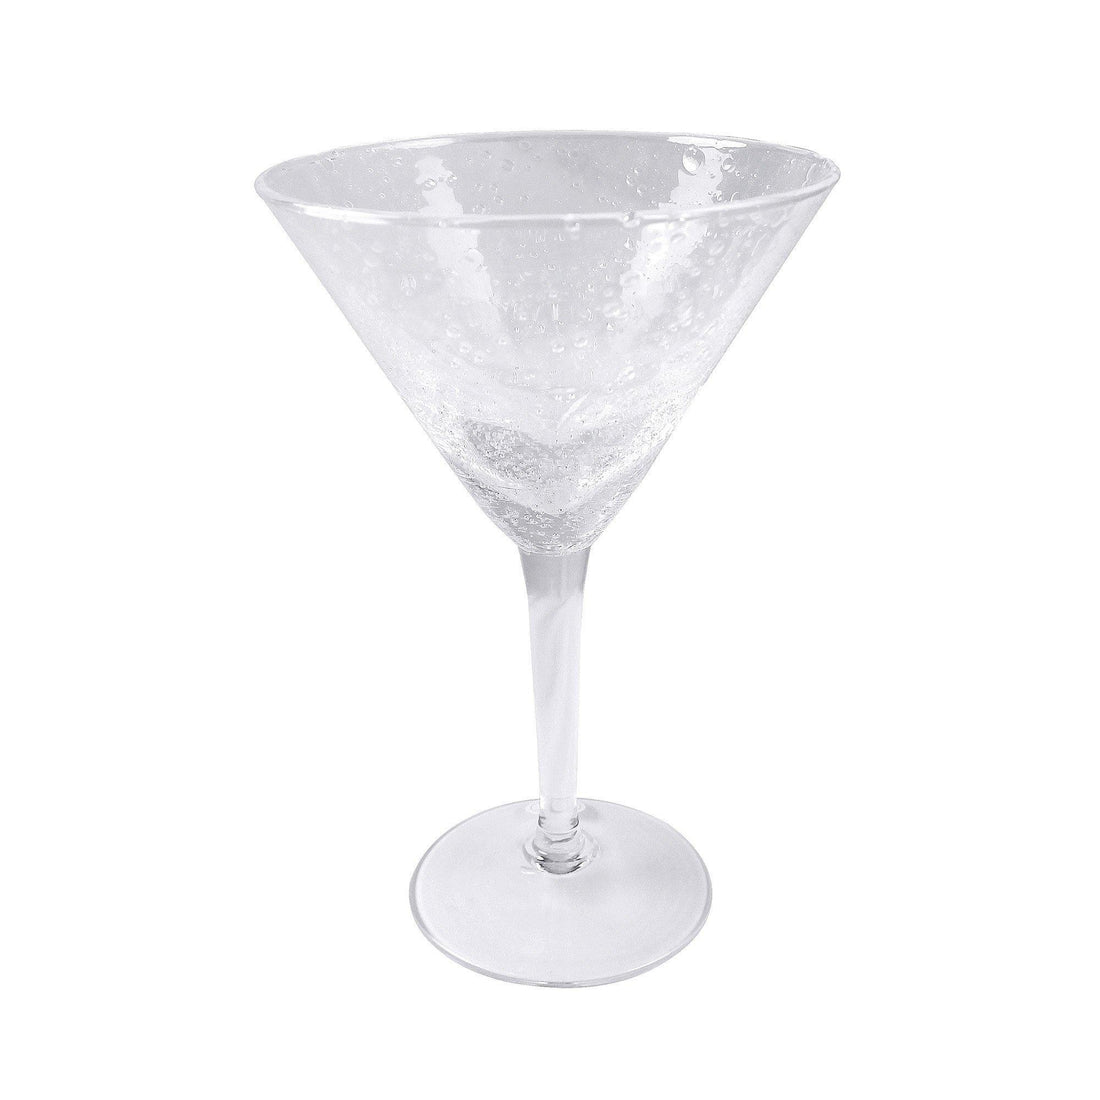 Bellini Cocktail Glass | Mariposa Glassware